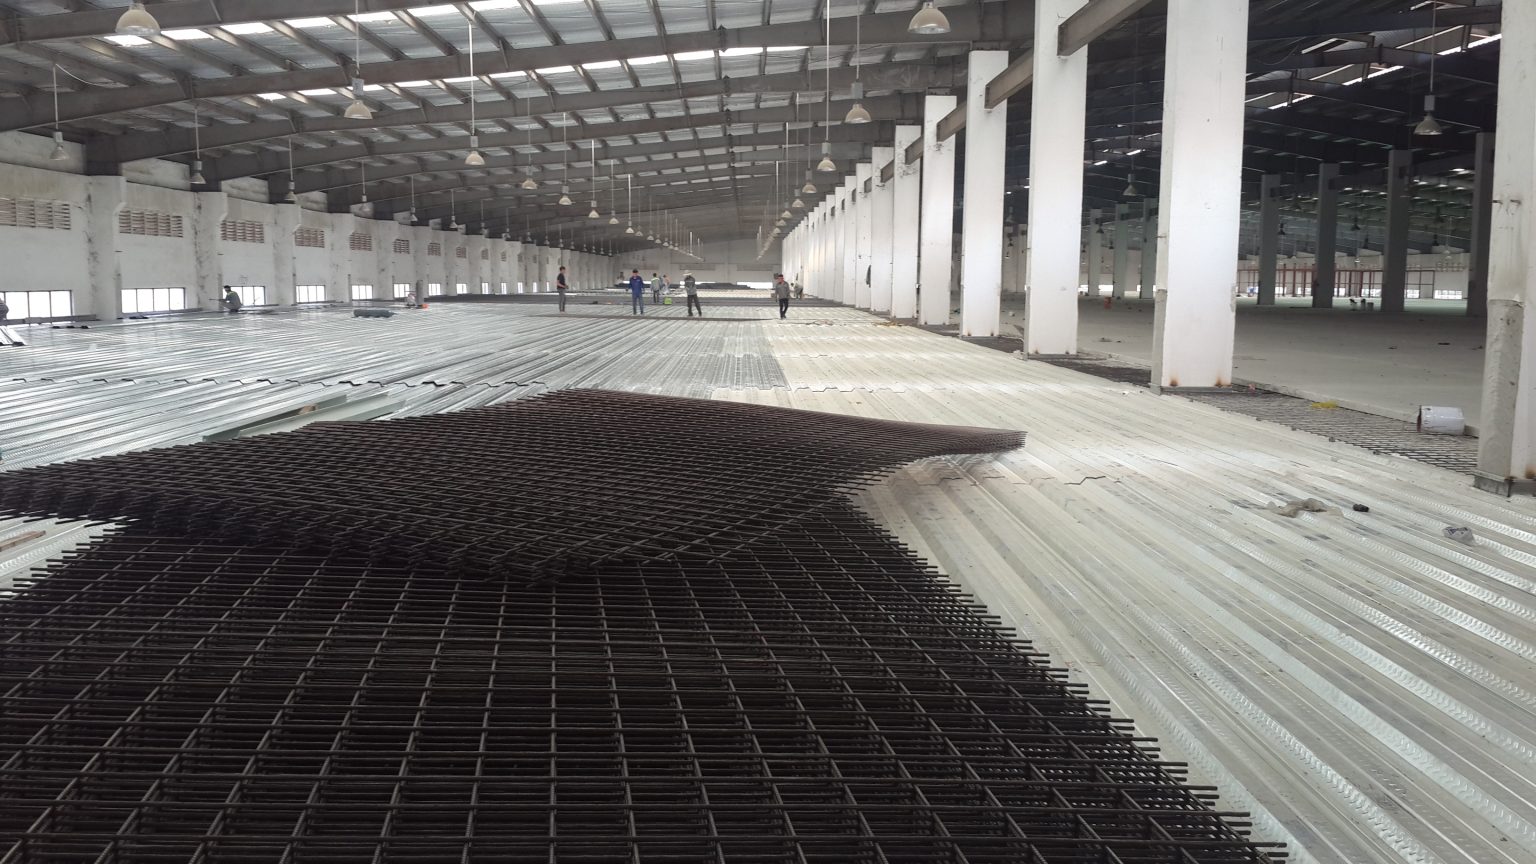 Tìm hiểu quy trình thiết kế dầm sàn nhà xưởng công nghiệp Thiet-ke-dam-san-nha-xuong-2-1536x864